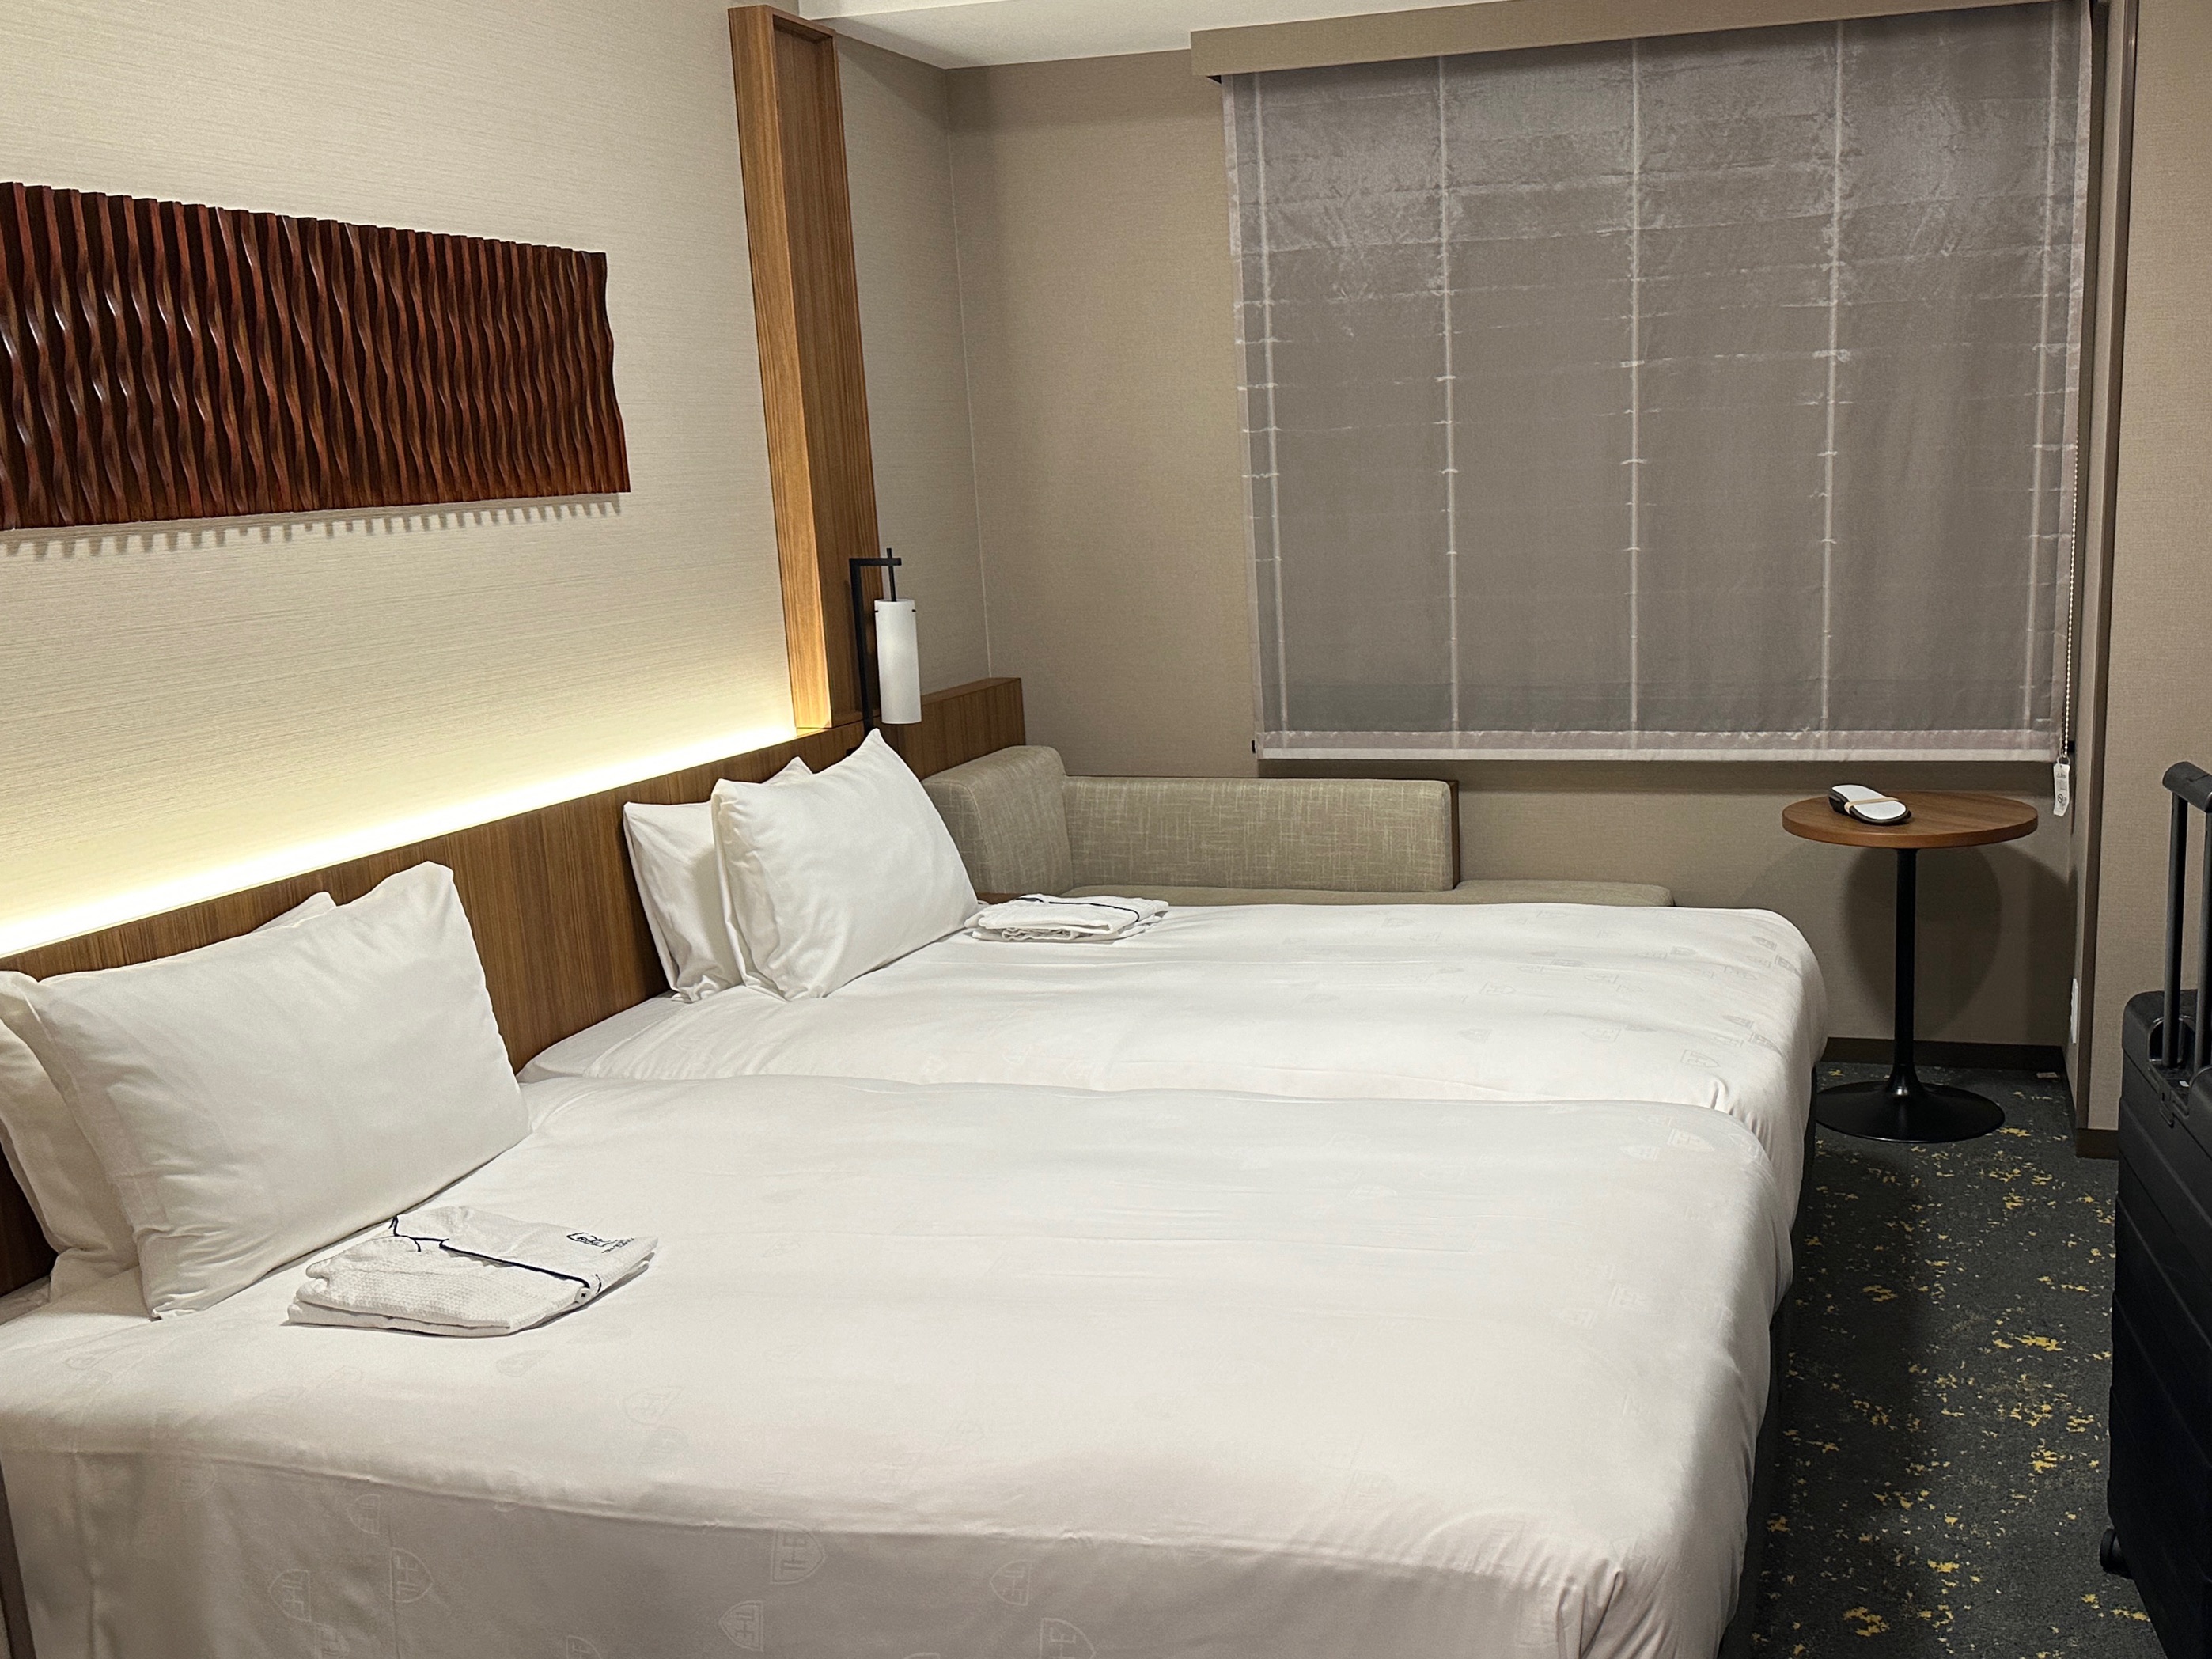 房间打扫的很干净，服务还有提高的空间。  酒店地处神户核心区域三宫，但是坐地铁没有想像中的方便，地下